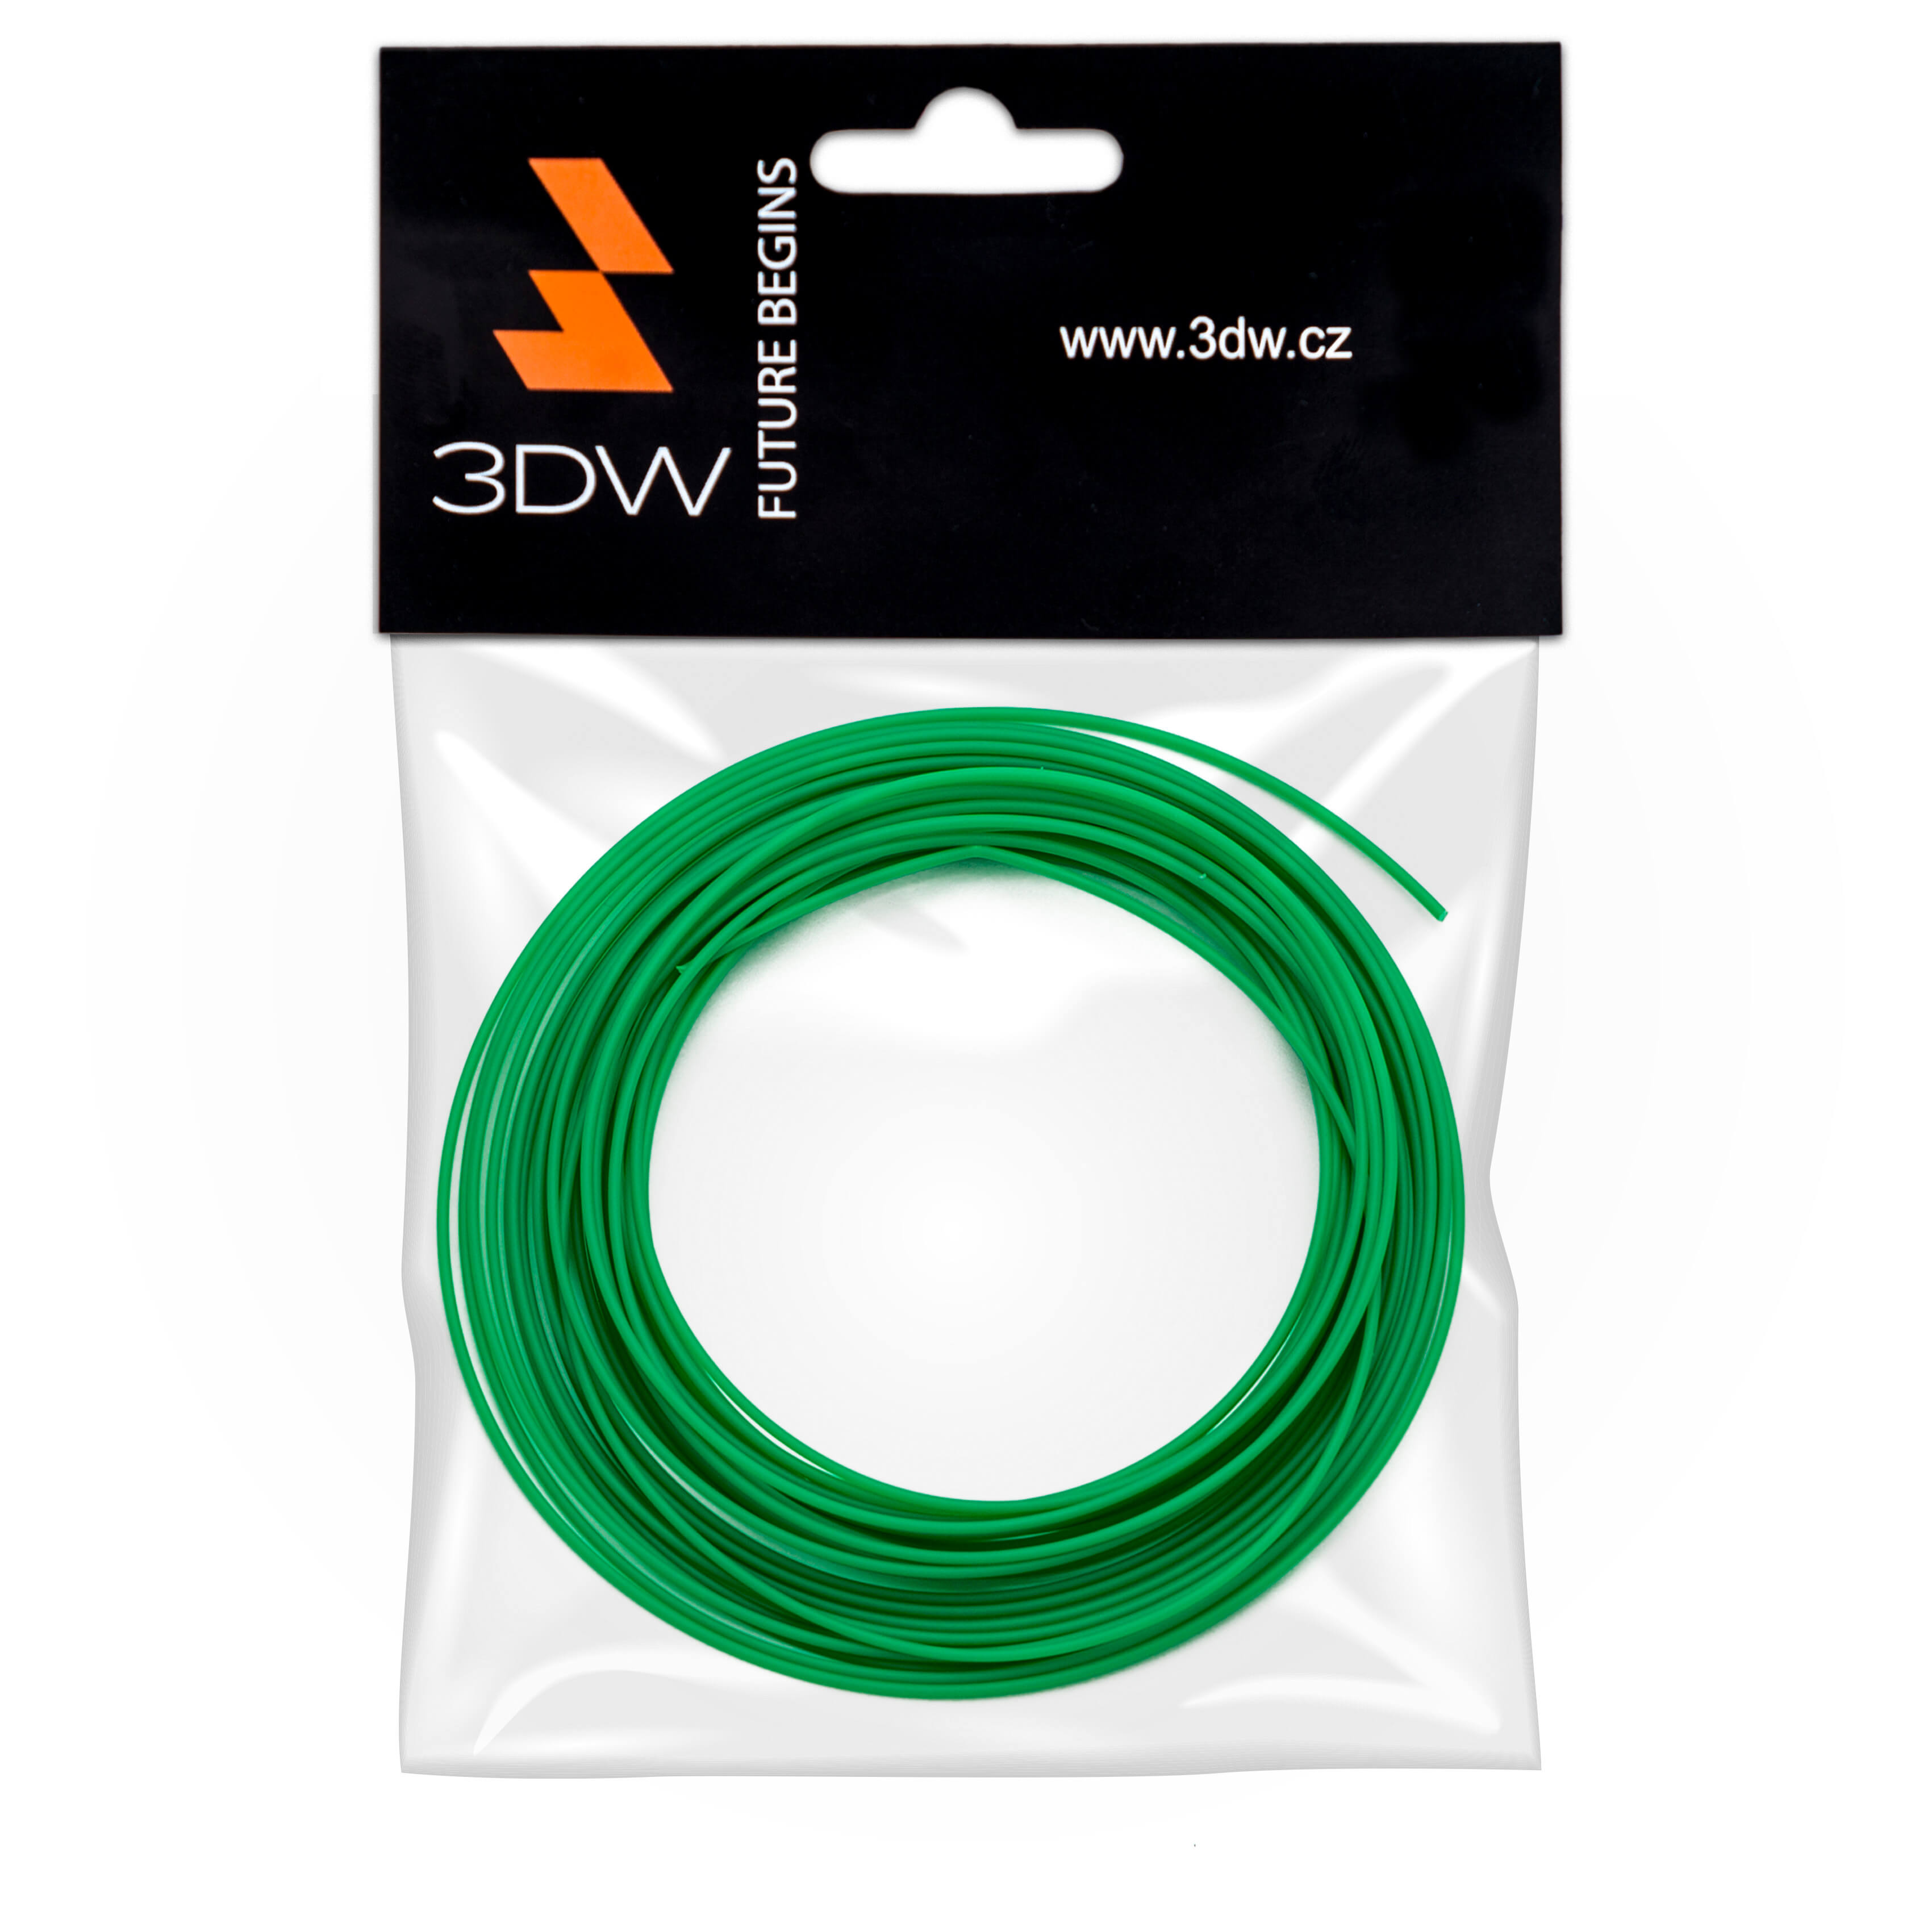 Tisková struna 3DW (filament) PLA, 1,75mm, 10m, zelená, 220-250°C